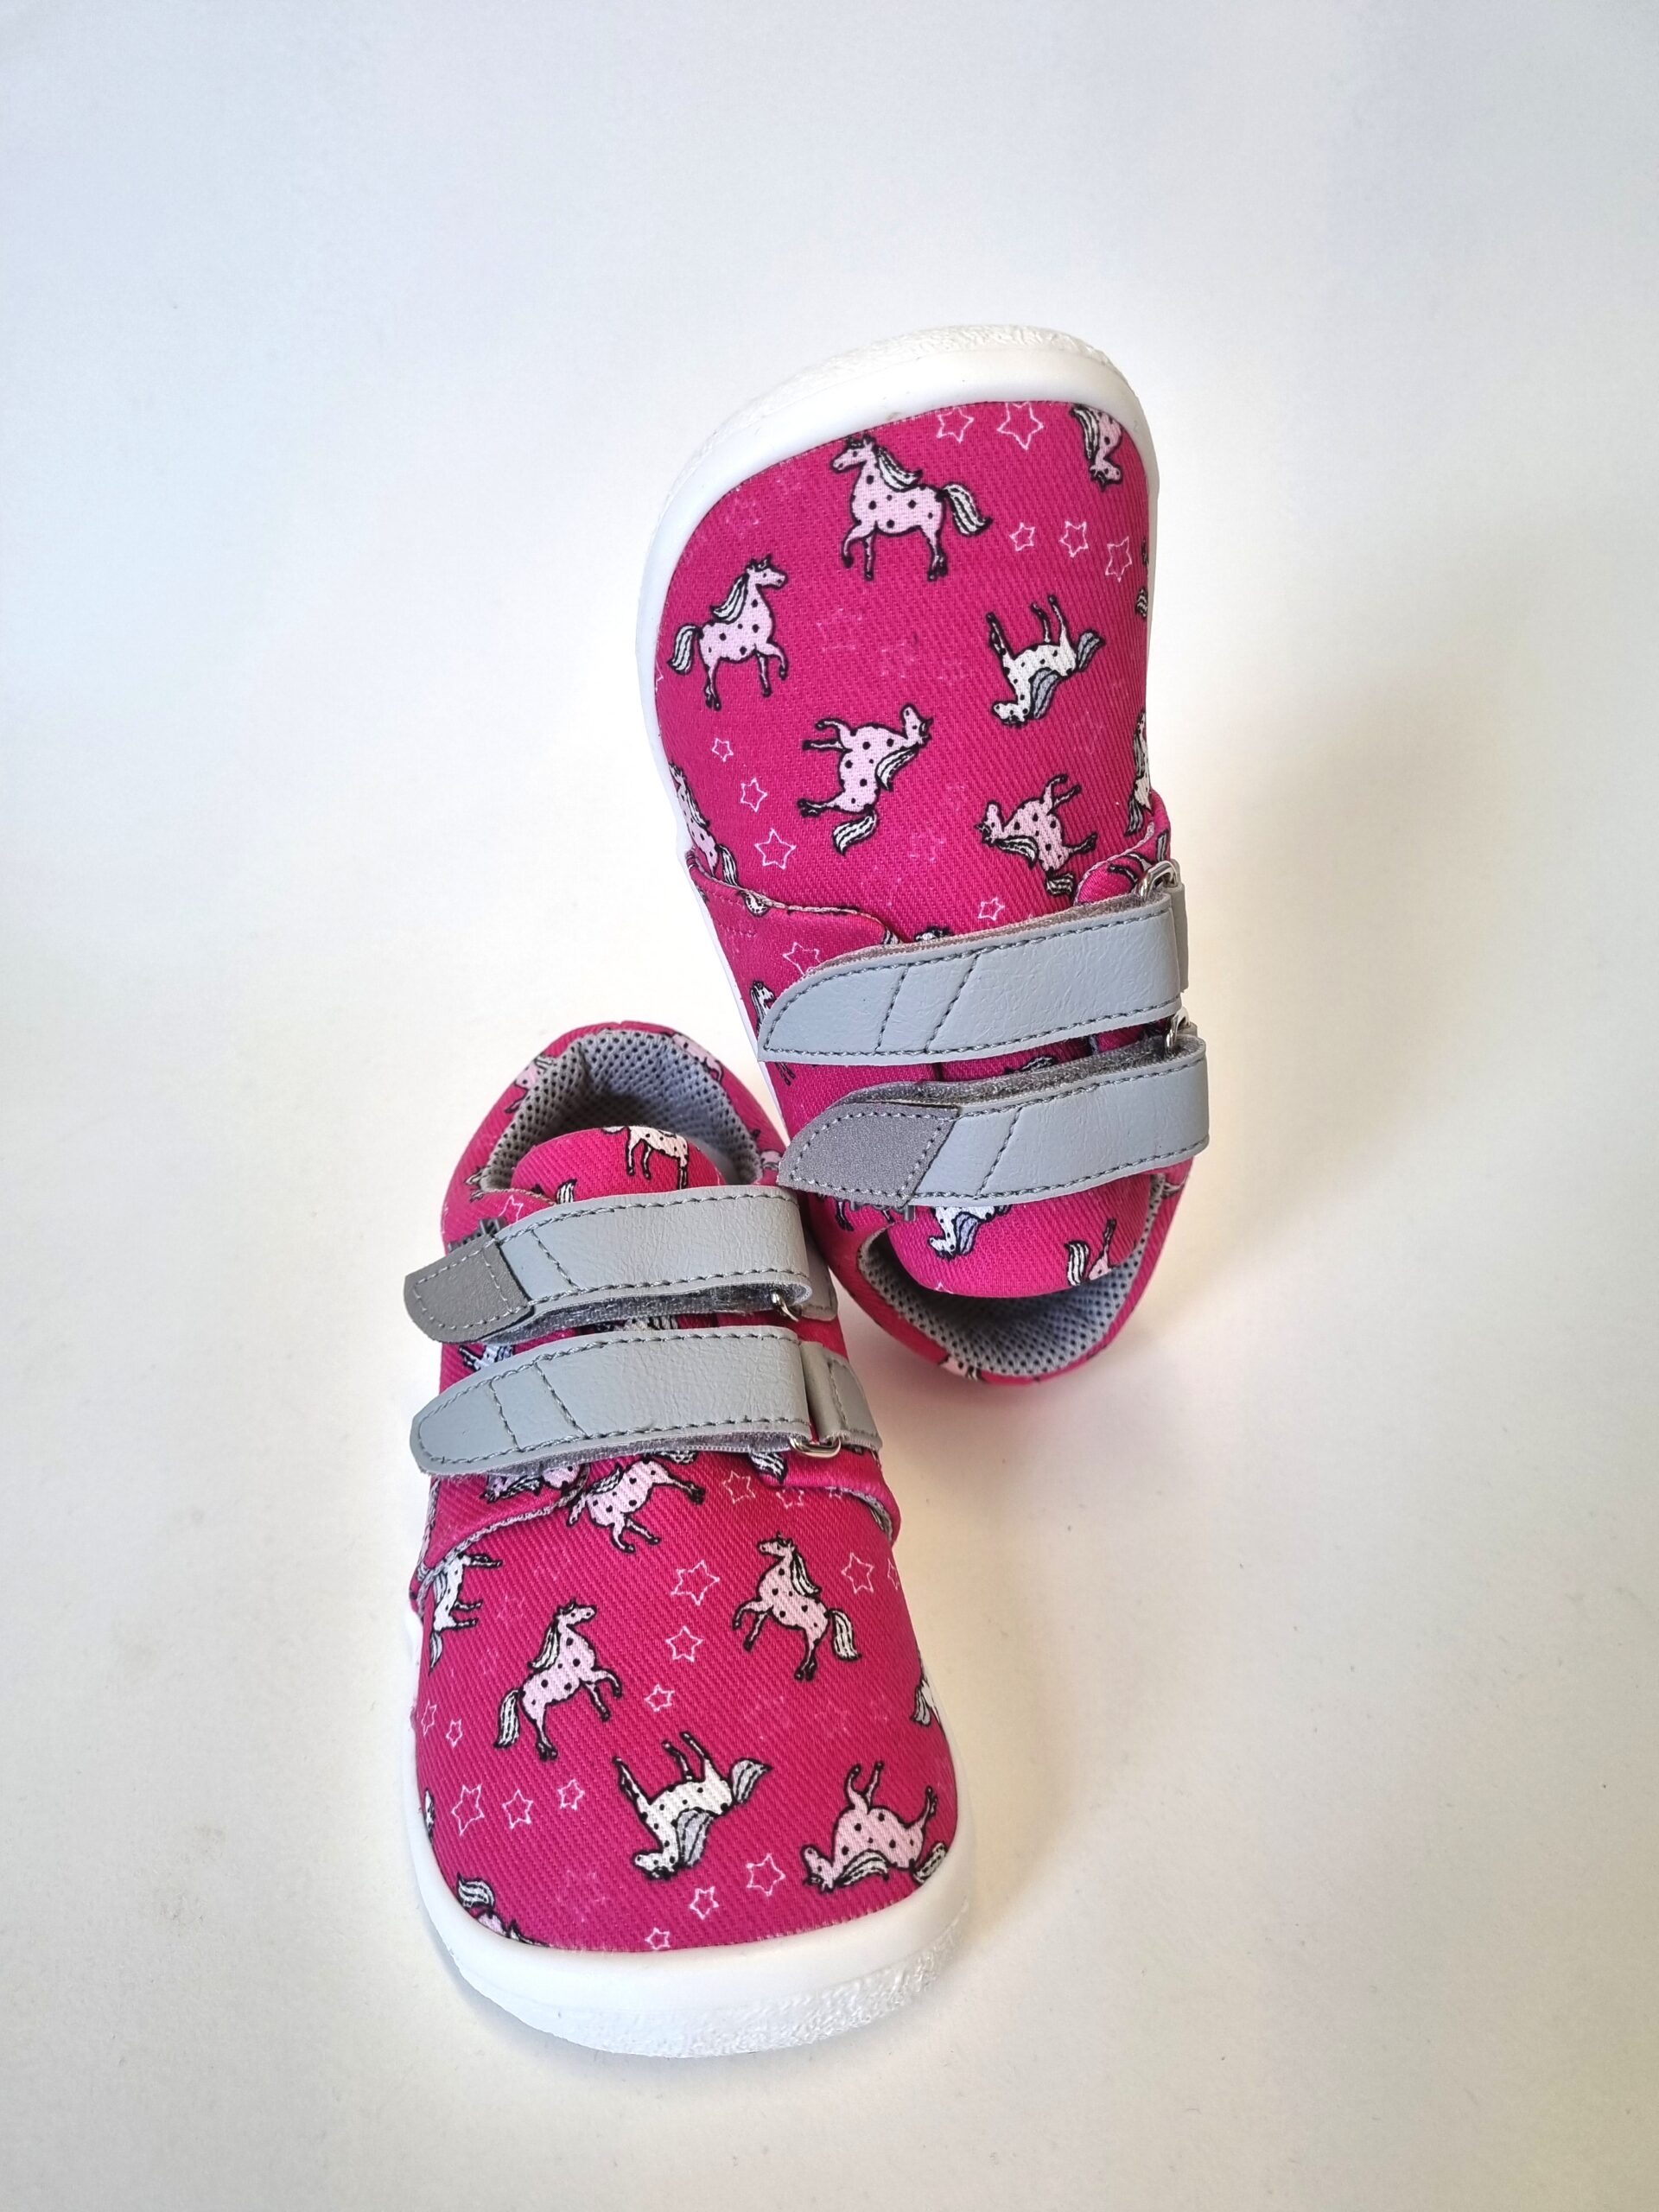 Beda Boty tossud, Unicorn Laste barefoot jalatsid - HellyK - Kvaliteetsed lasteriided, villariided, barefoot jalatsid